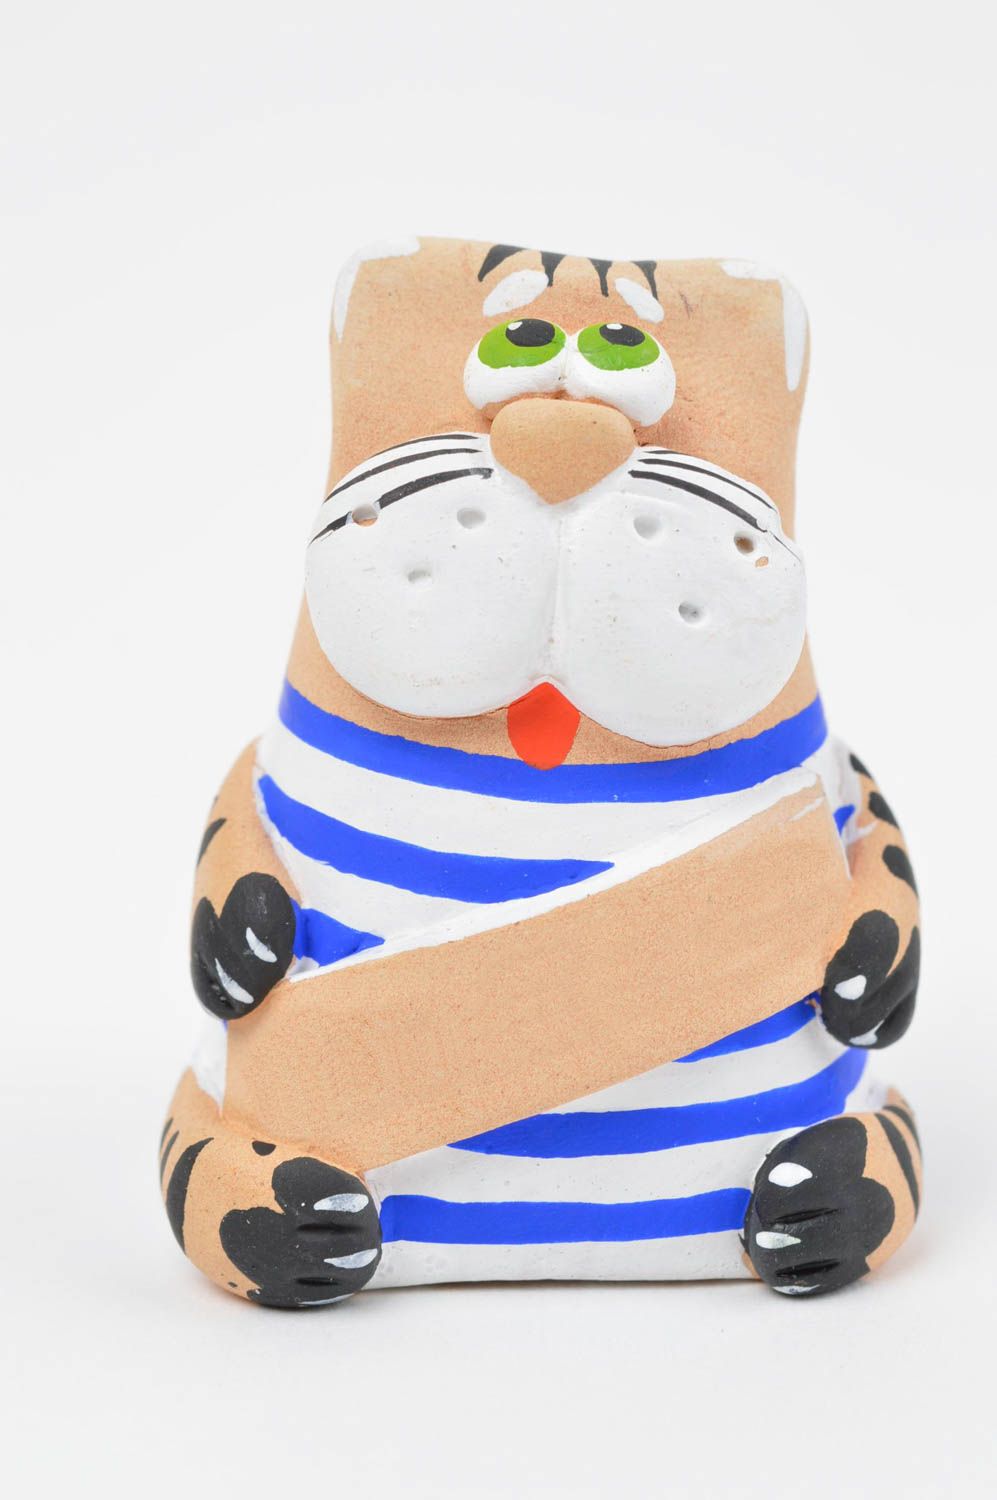 Авторская глиняная статуэтка фигурка кота моряка в тельняшке ручной работы фото 2